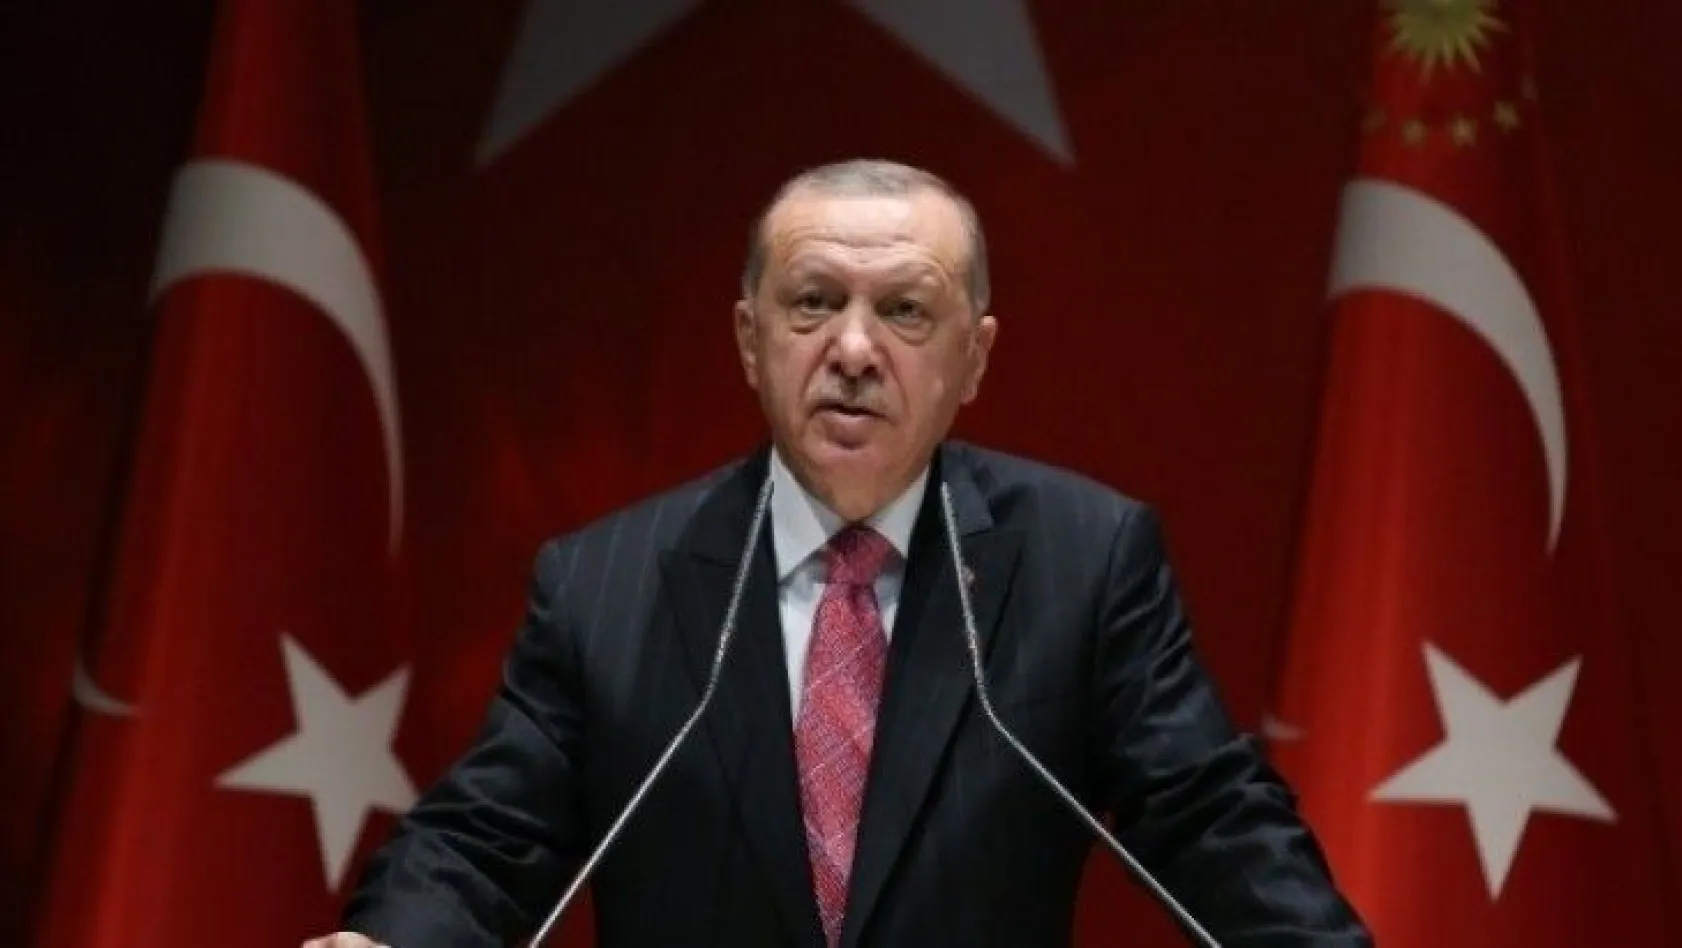 Cumhurbaşkanı Erdoğan İnsan Hakları Eylem Planı'nı açıkladı!